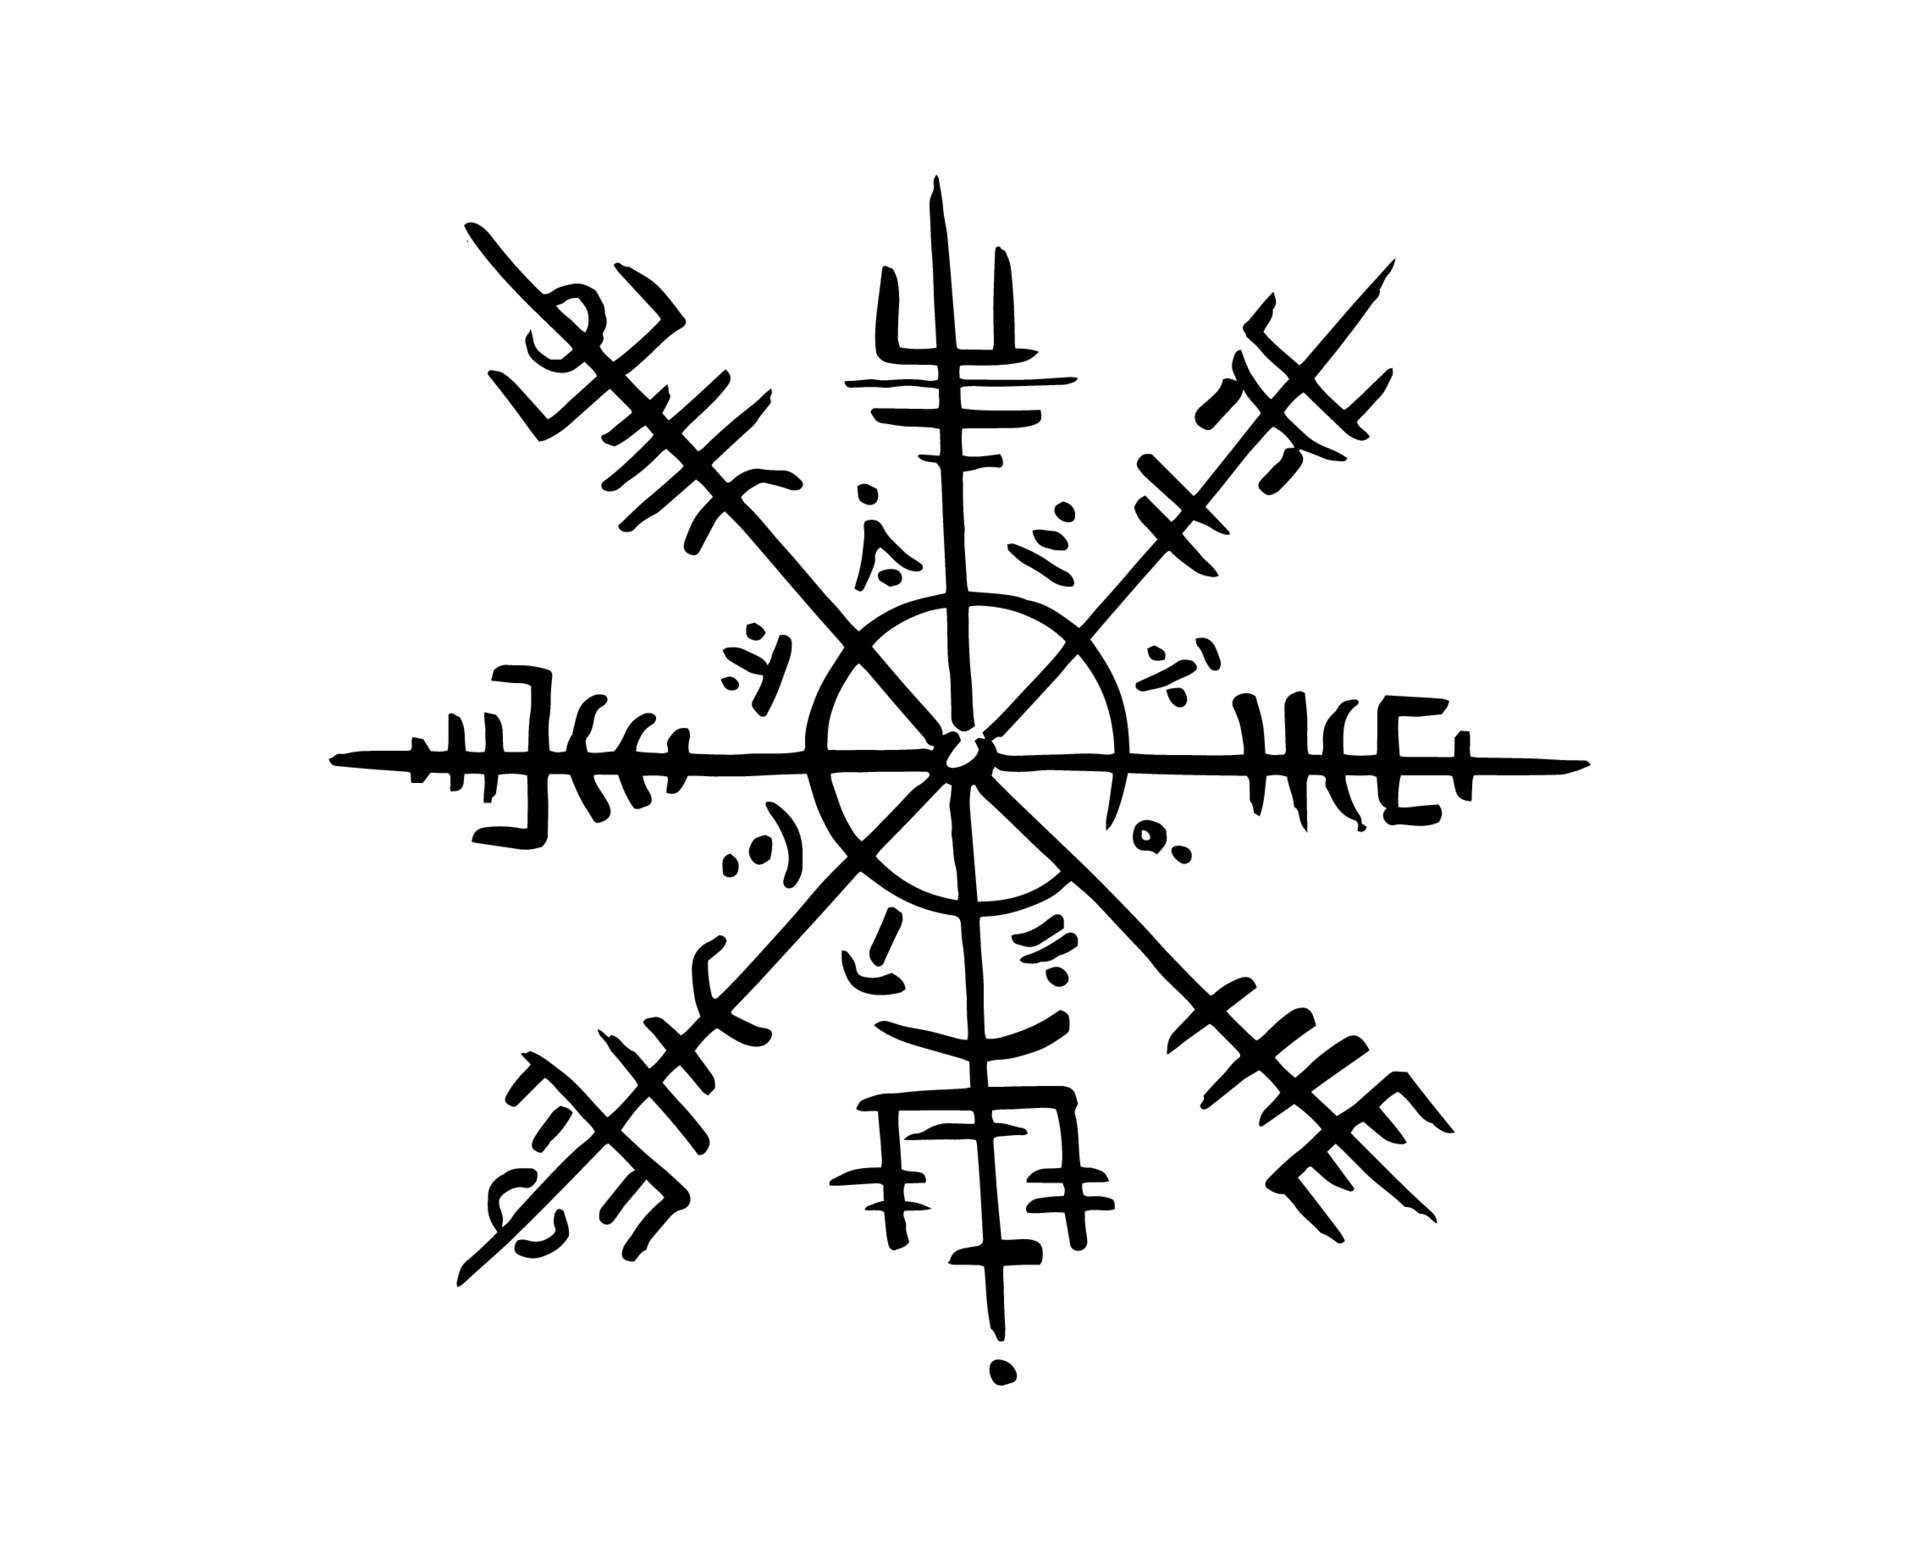 Hand drawn Viking runes & Symbols Set. Nordic mythology art.